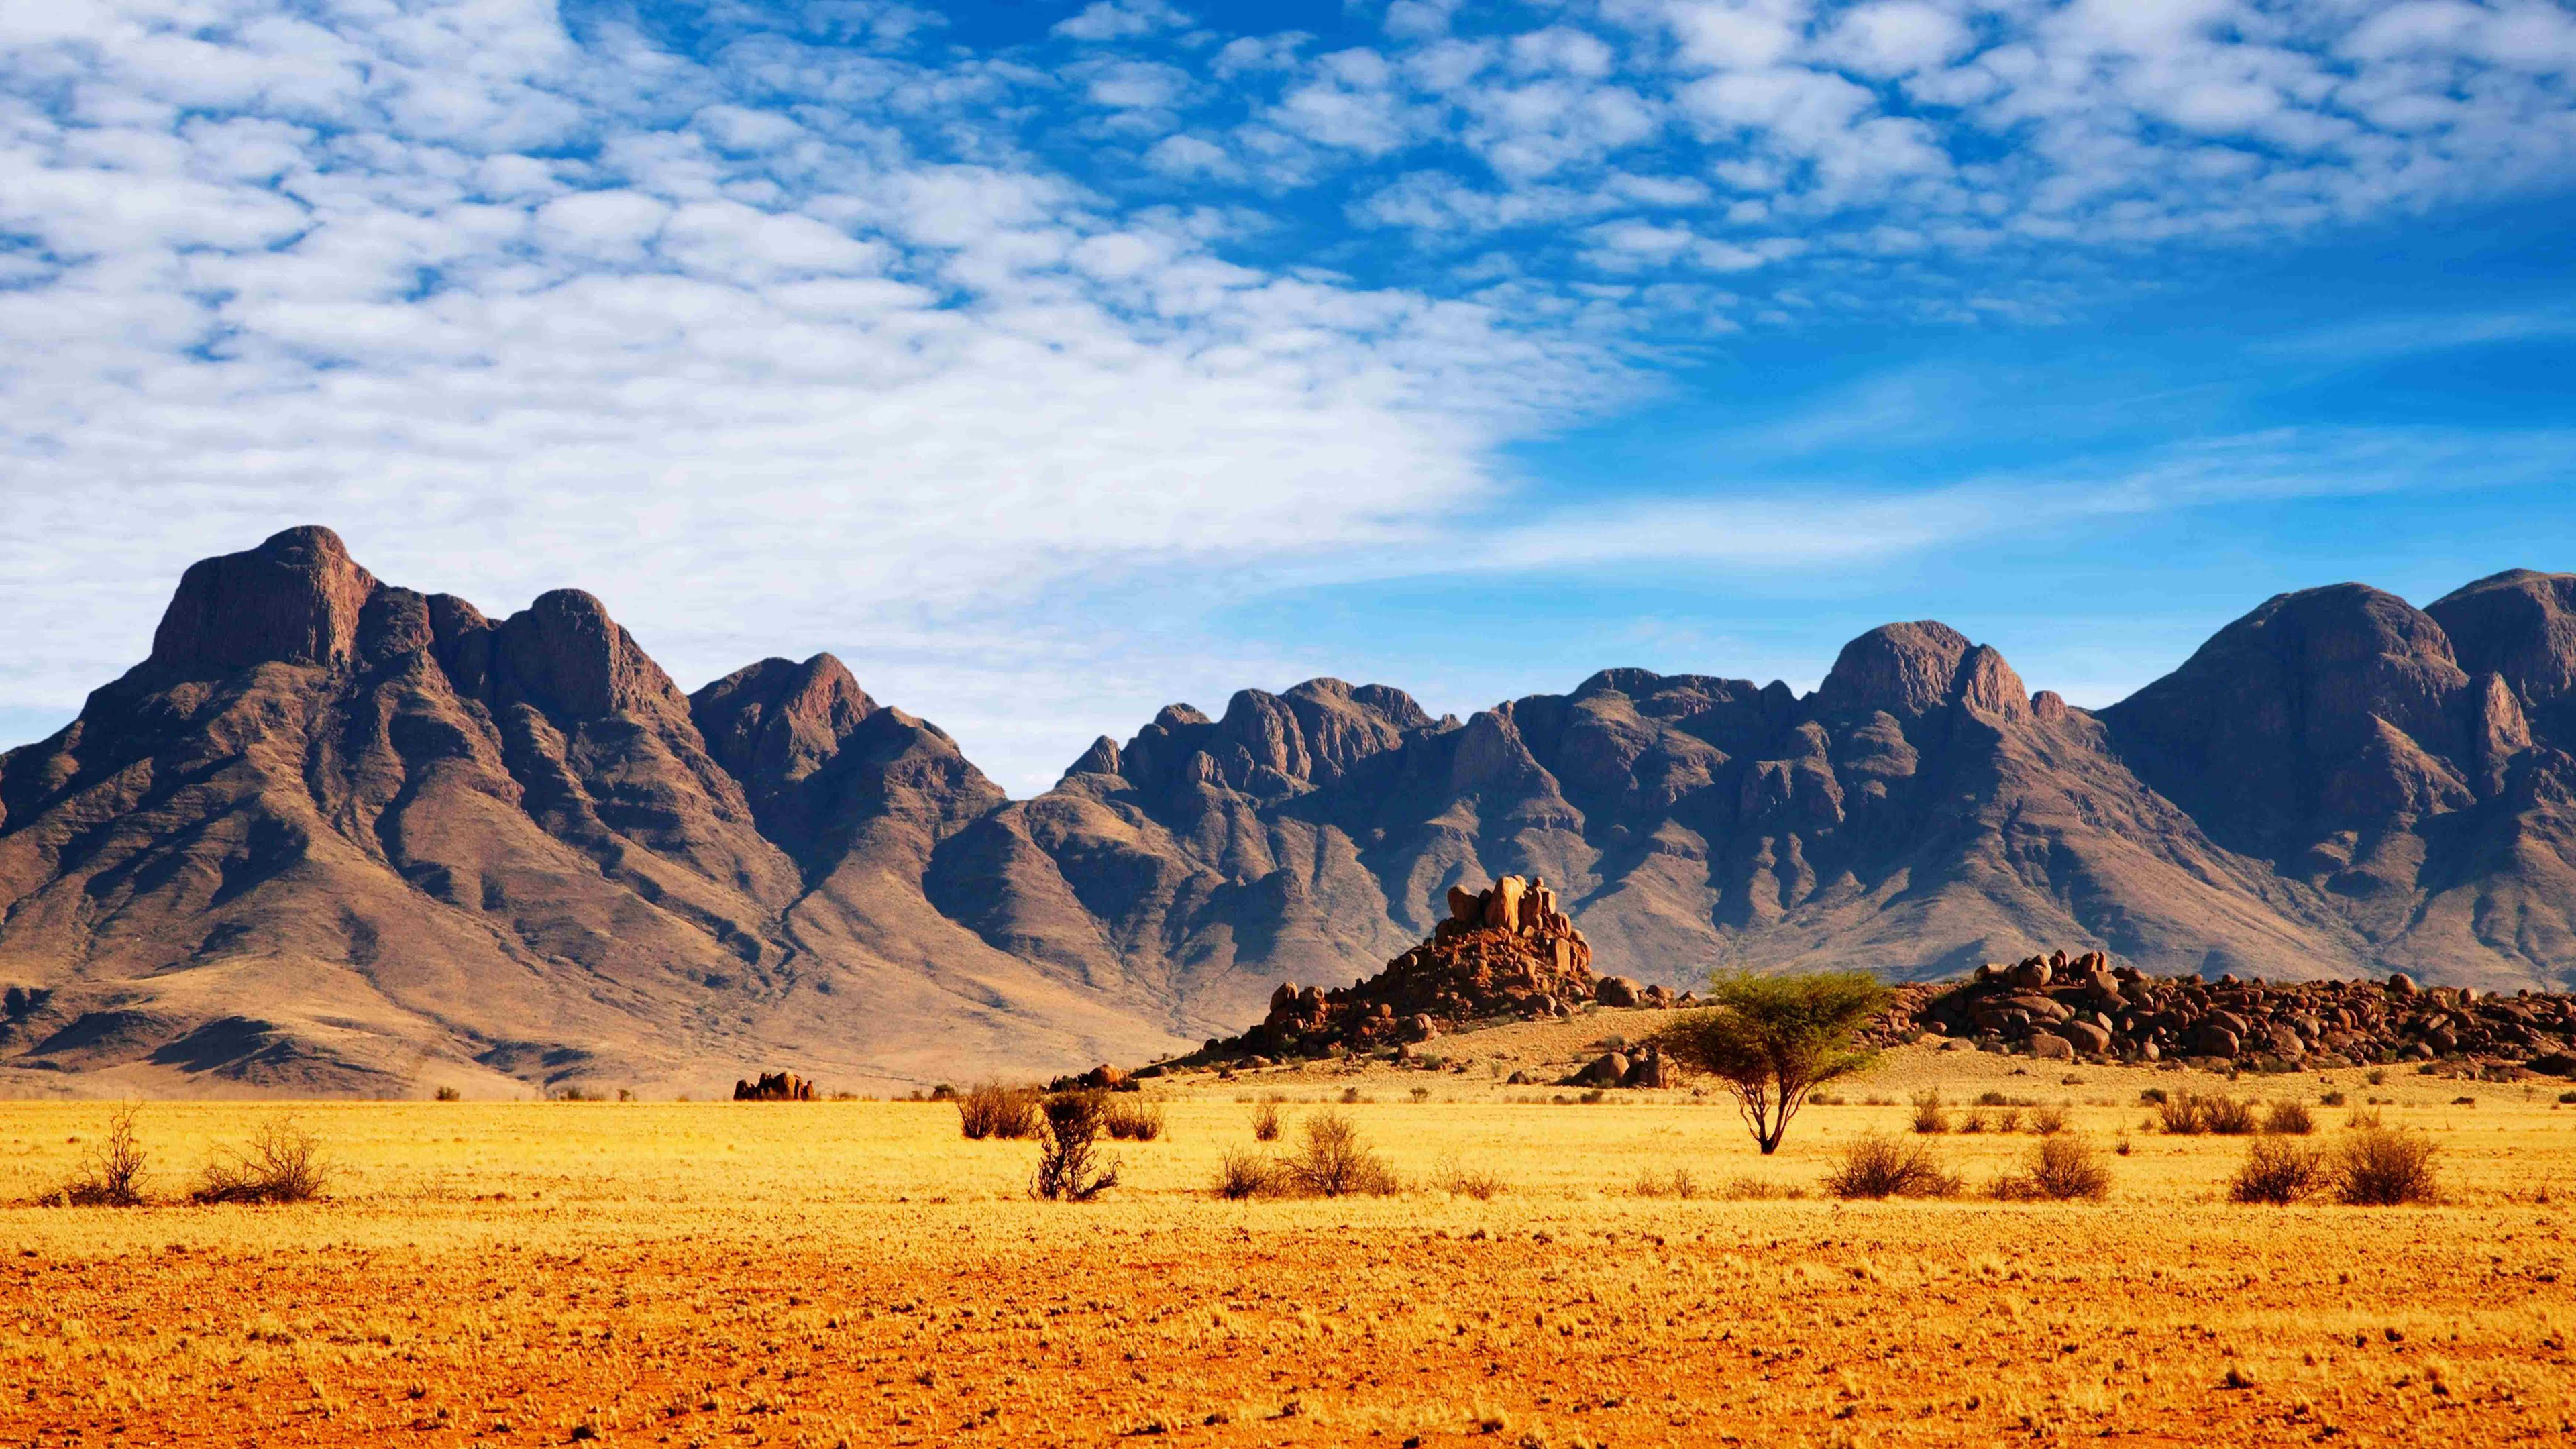 African Savannah Desert Mountains, Sky Stones Landscape Ultra Hd Wallpaper  For Desktop 3840x2160 : 